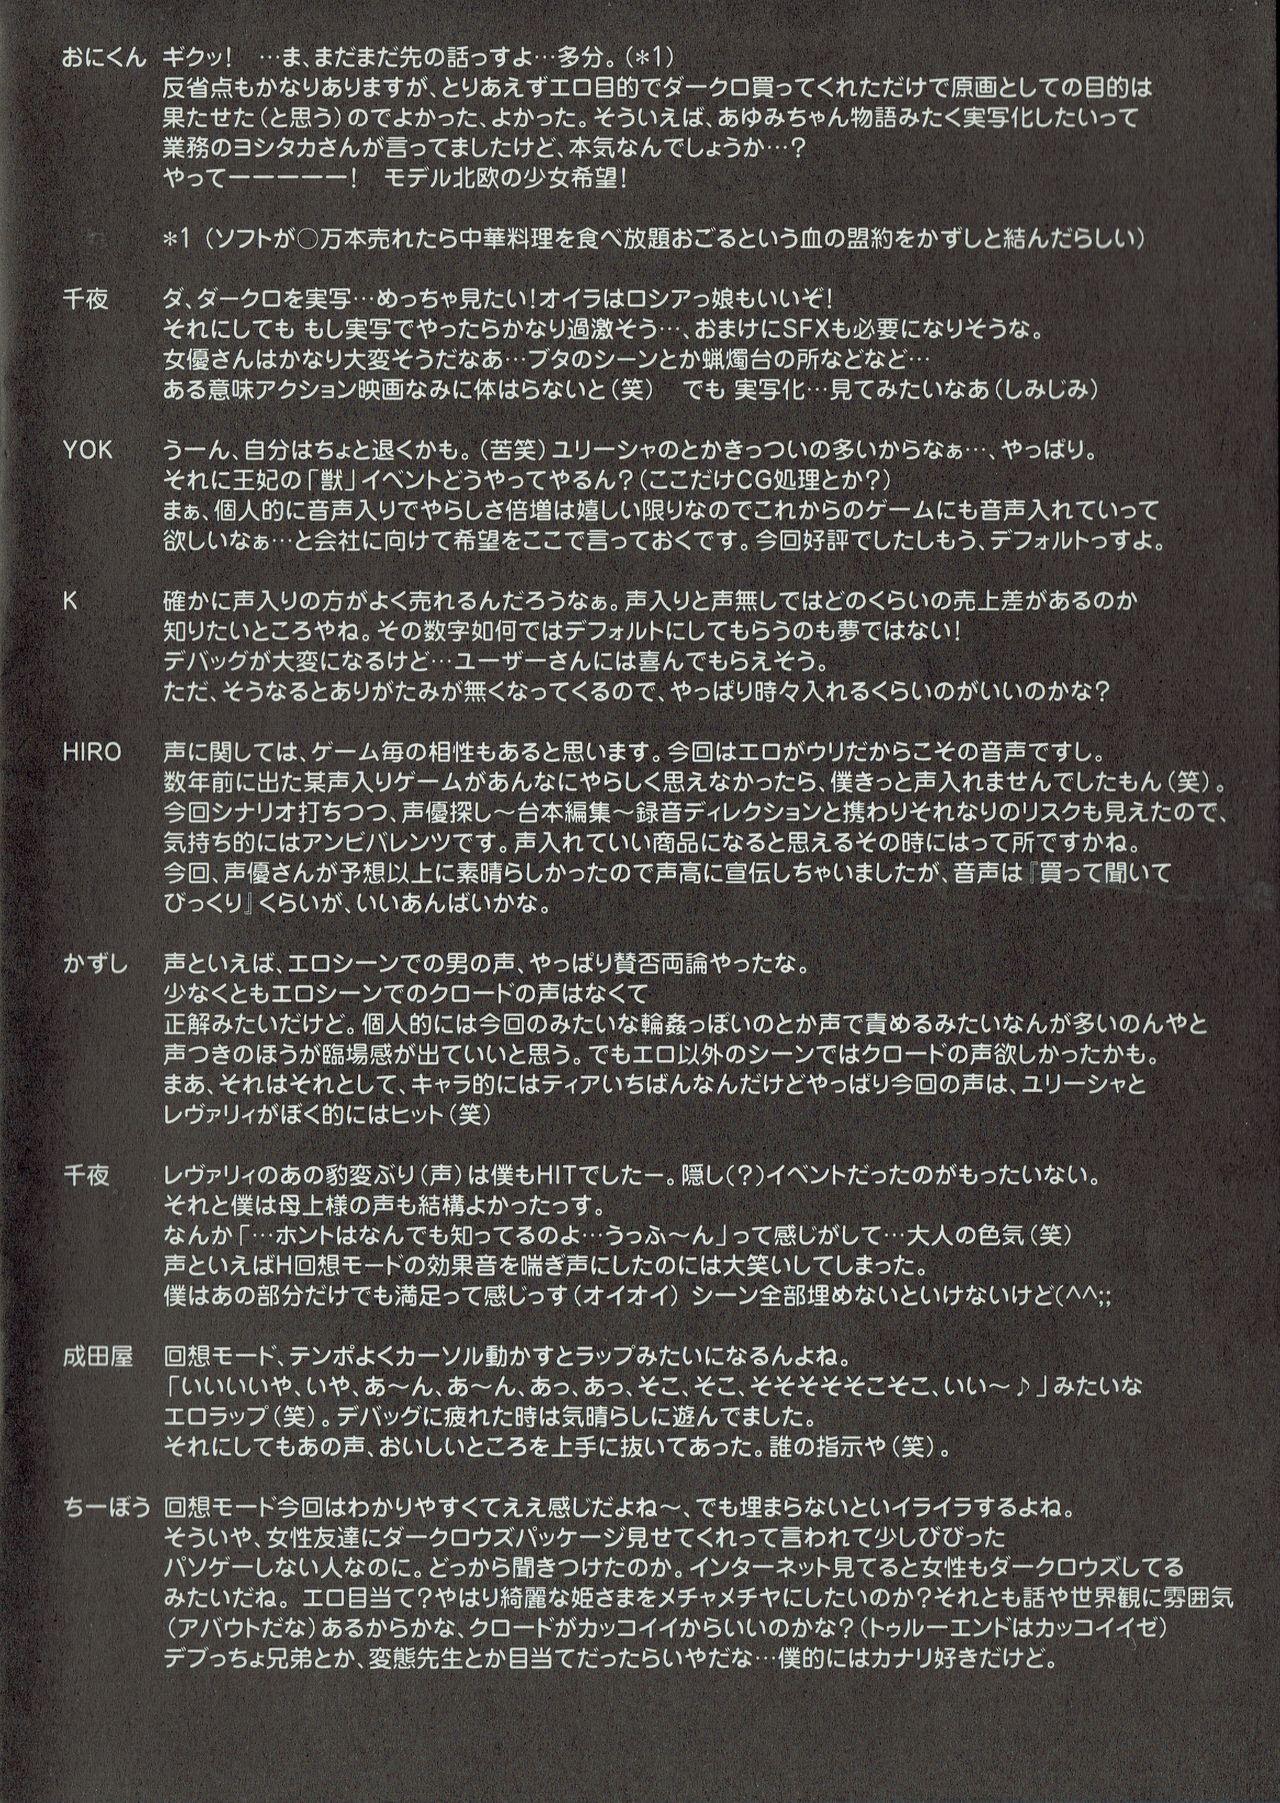 Arisu no Denchi Bakudan Vol. 10 8